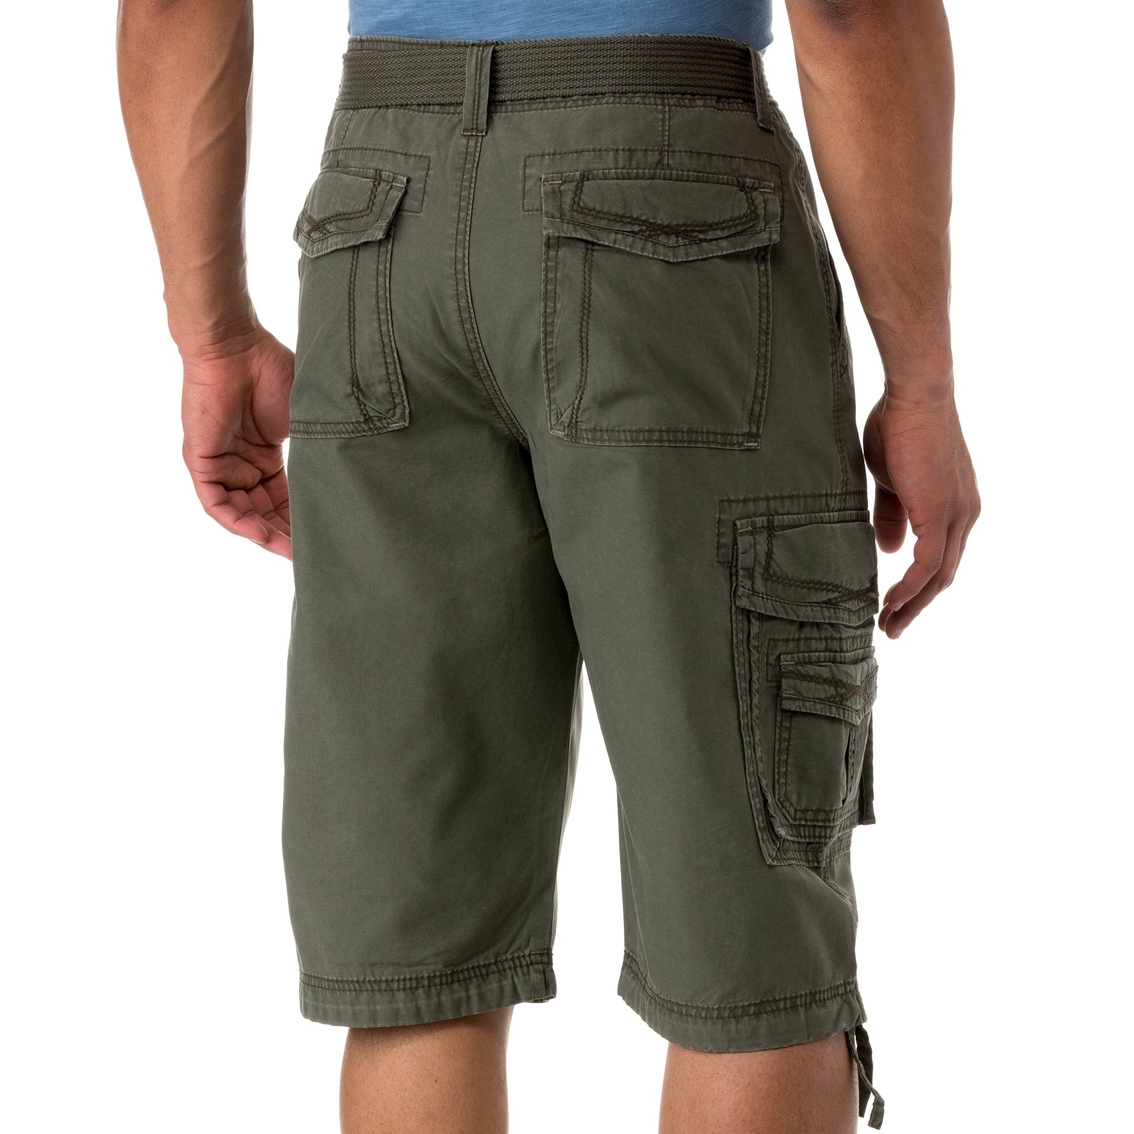 Unionbay Cordova Messenger Cargo Shorts | Shorts | Clothing ...